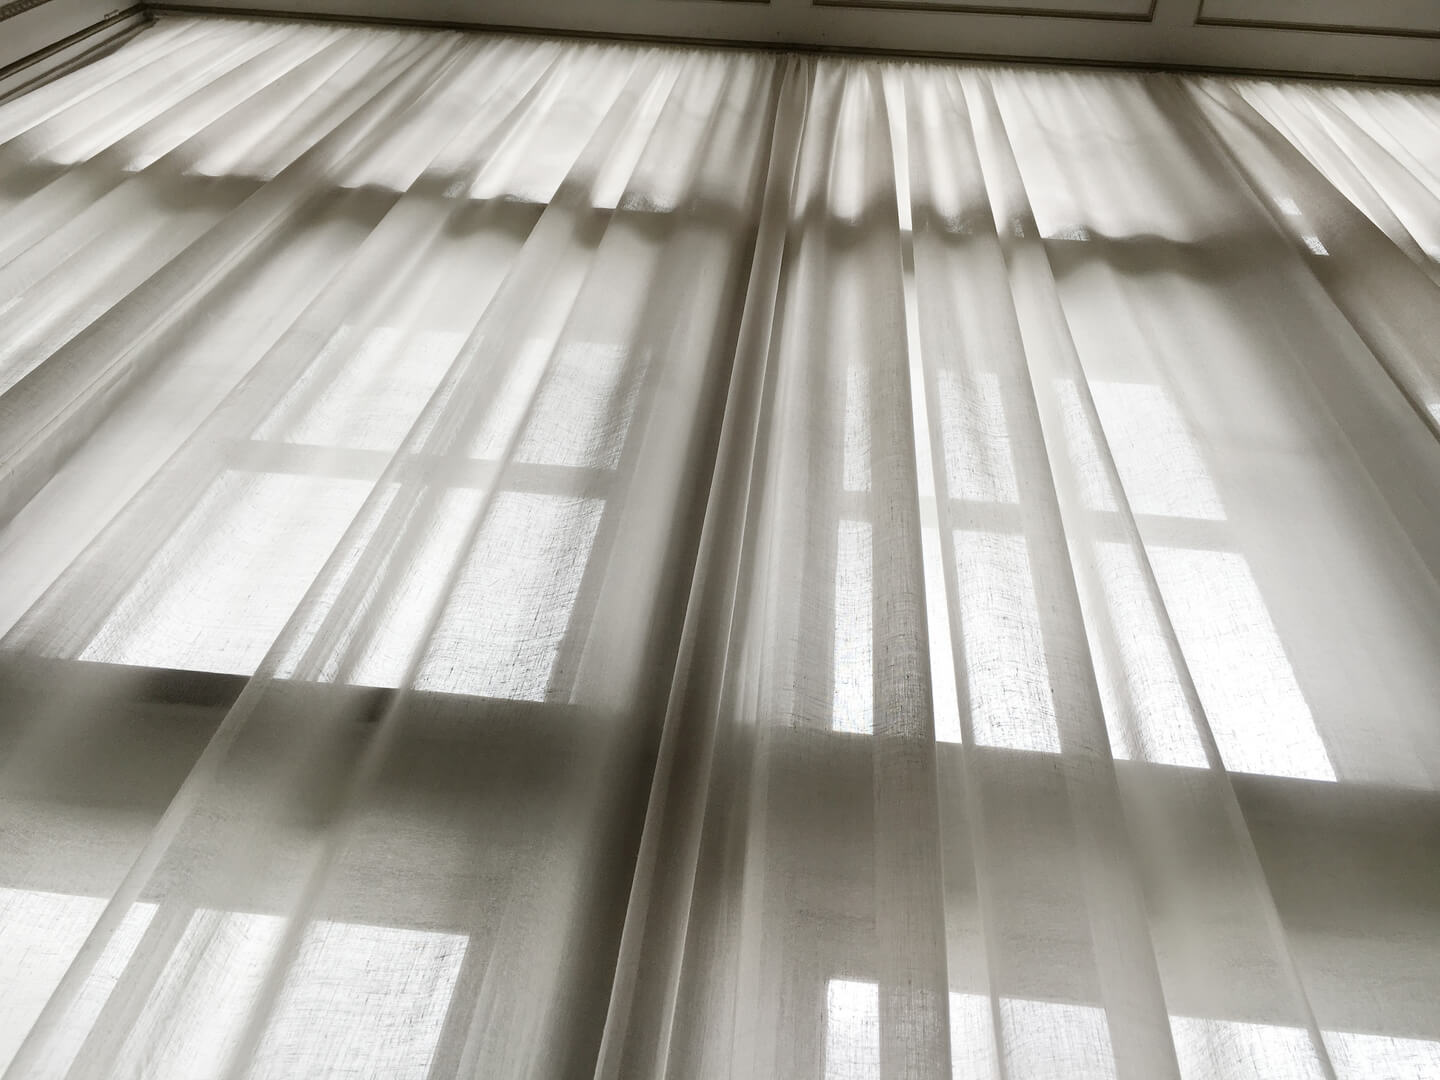 Upward view of a linen curtain